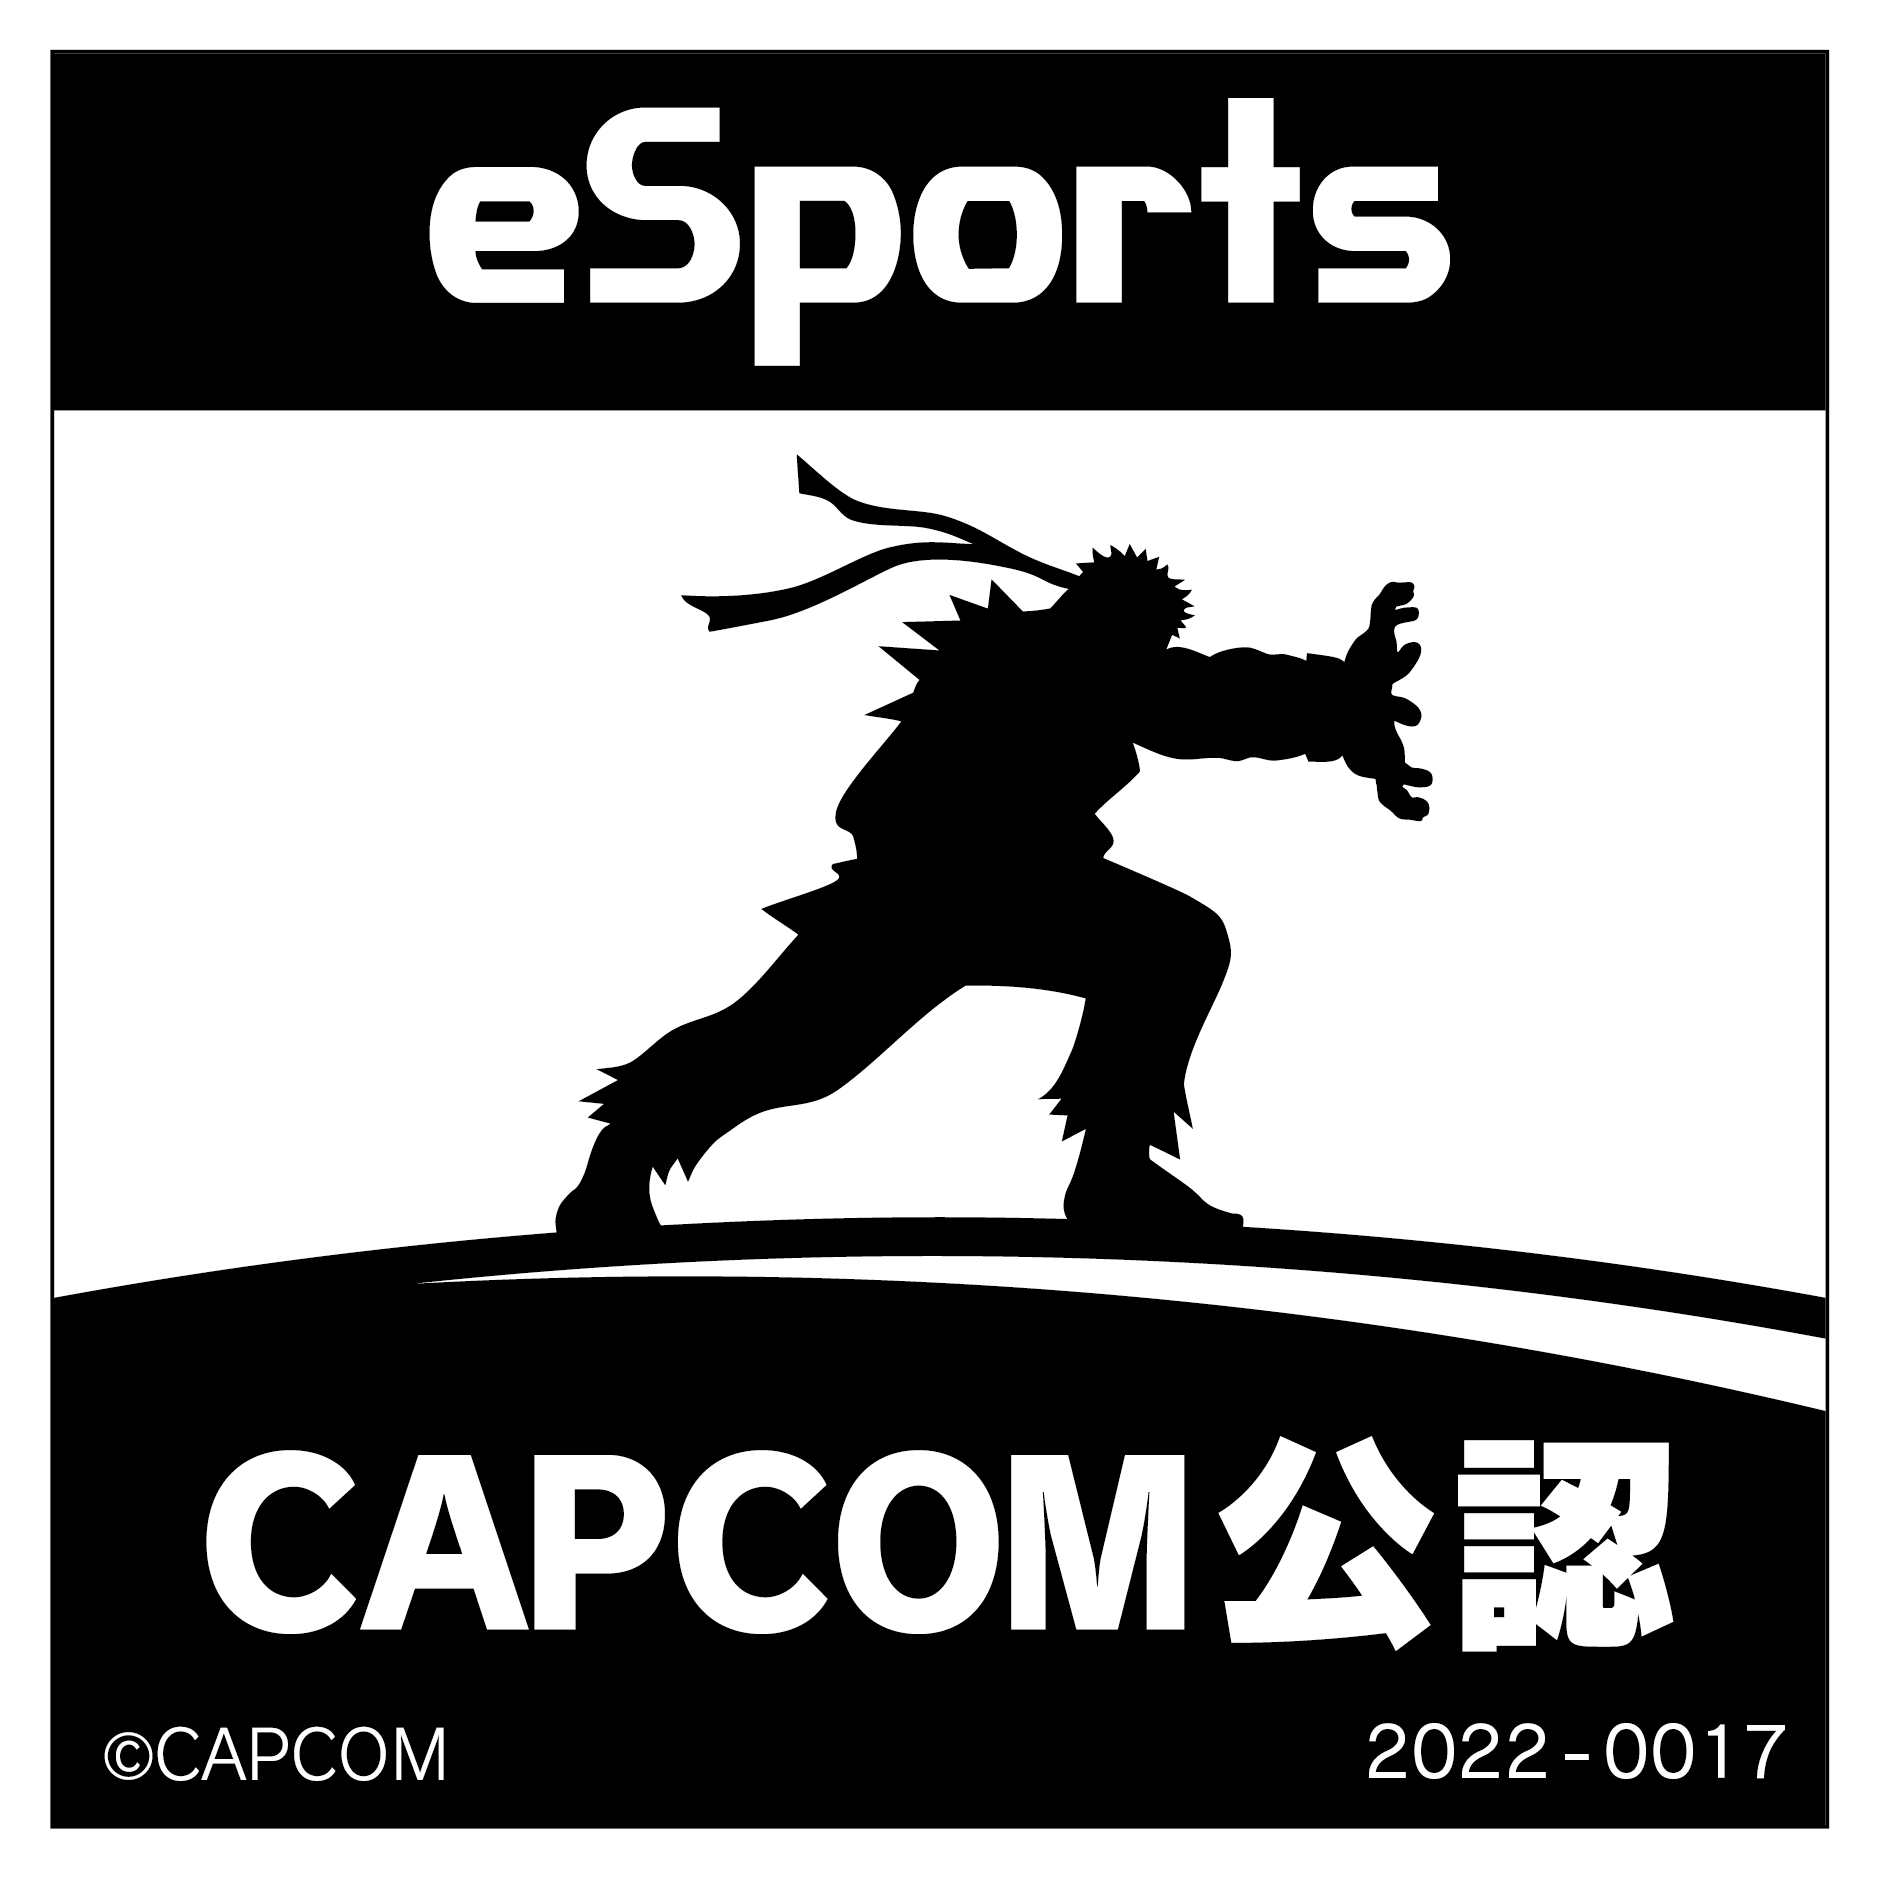 eSports CAPCOM公認 2022-0017